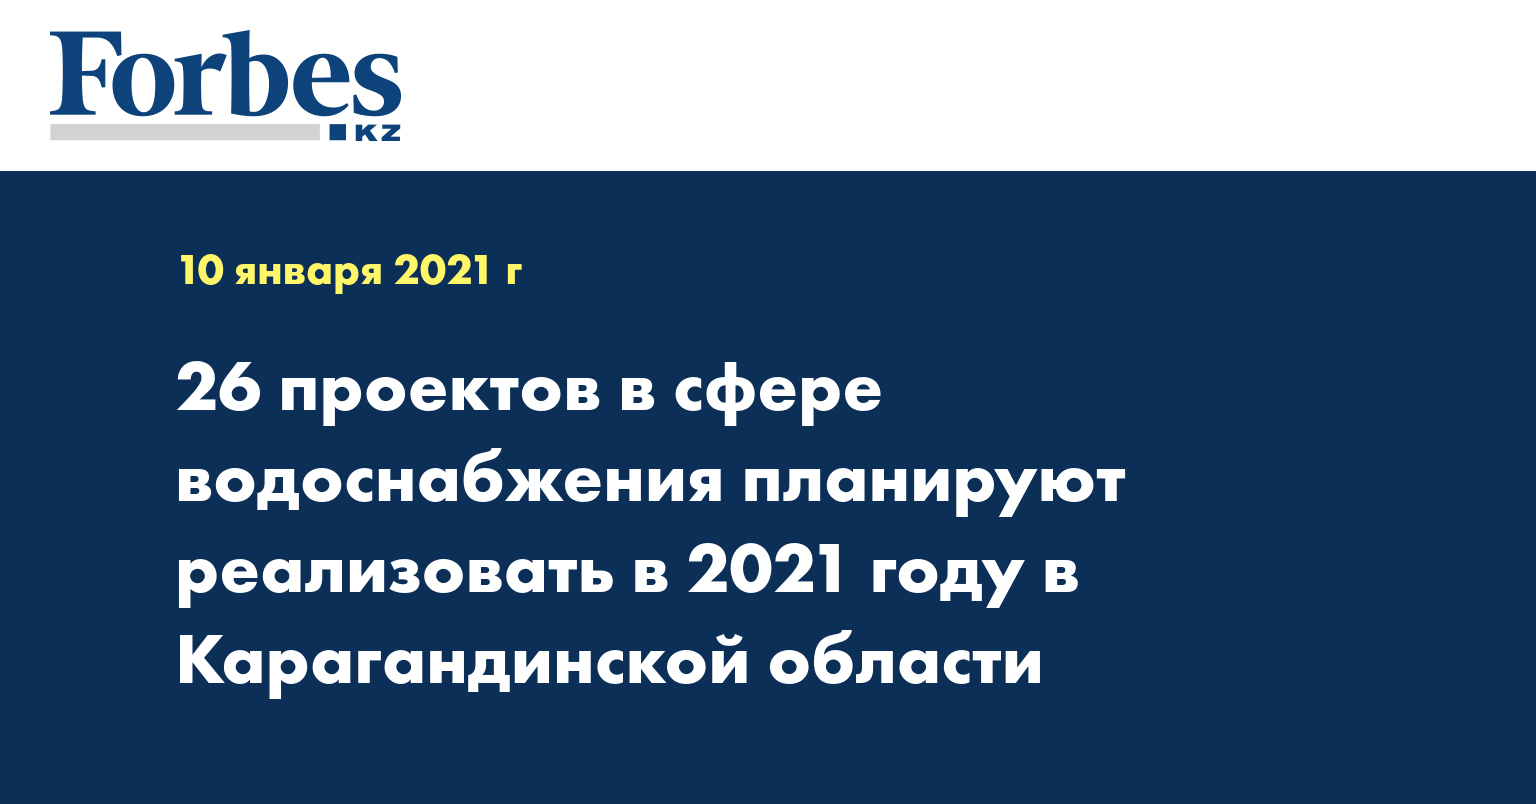 26 проектов в сфере водоснабжения планируют реализовать в 2021 году в Карагандинской области